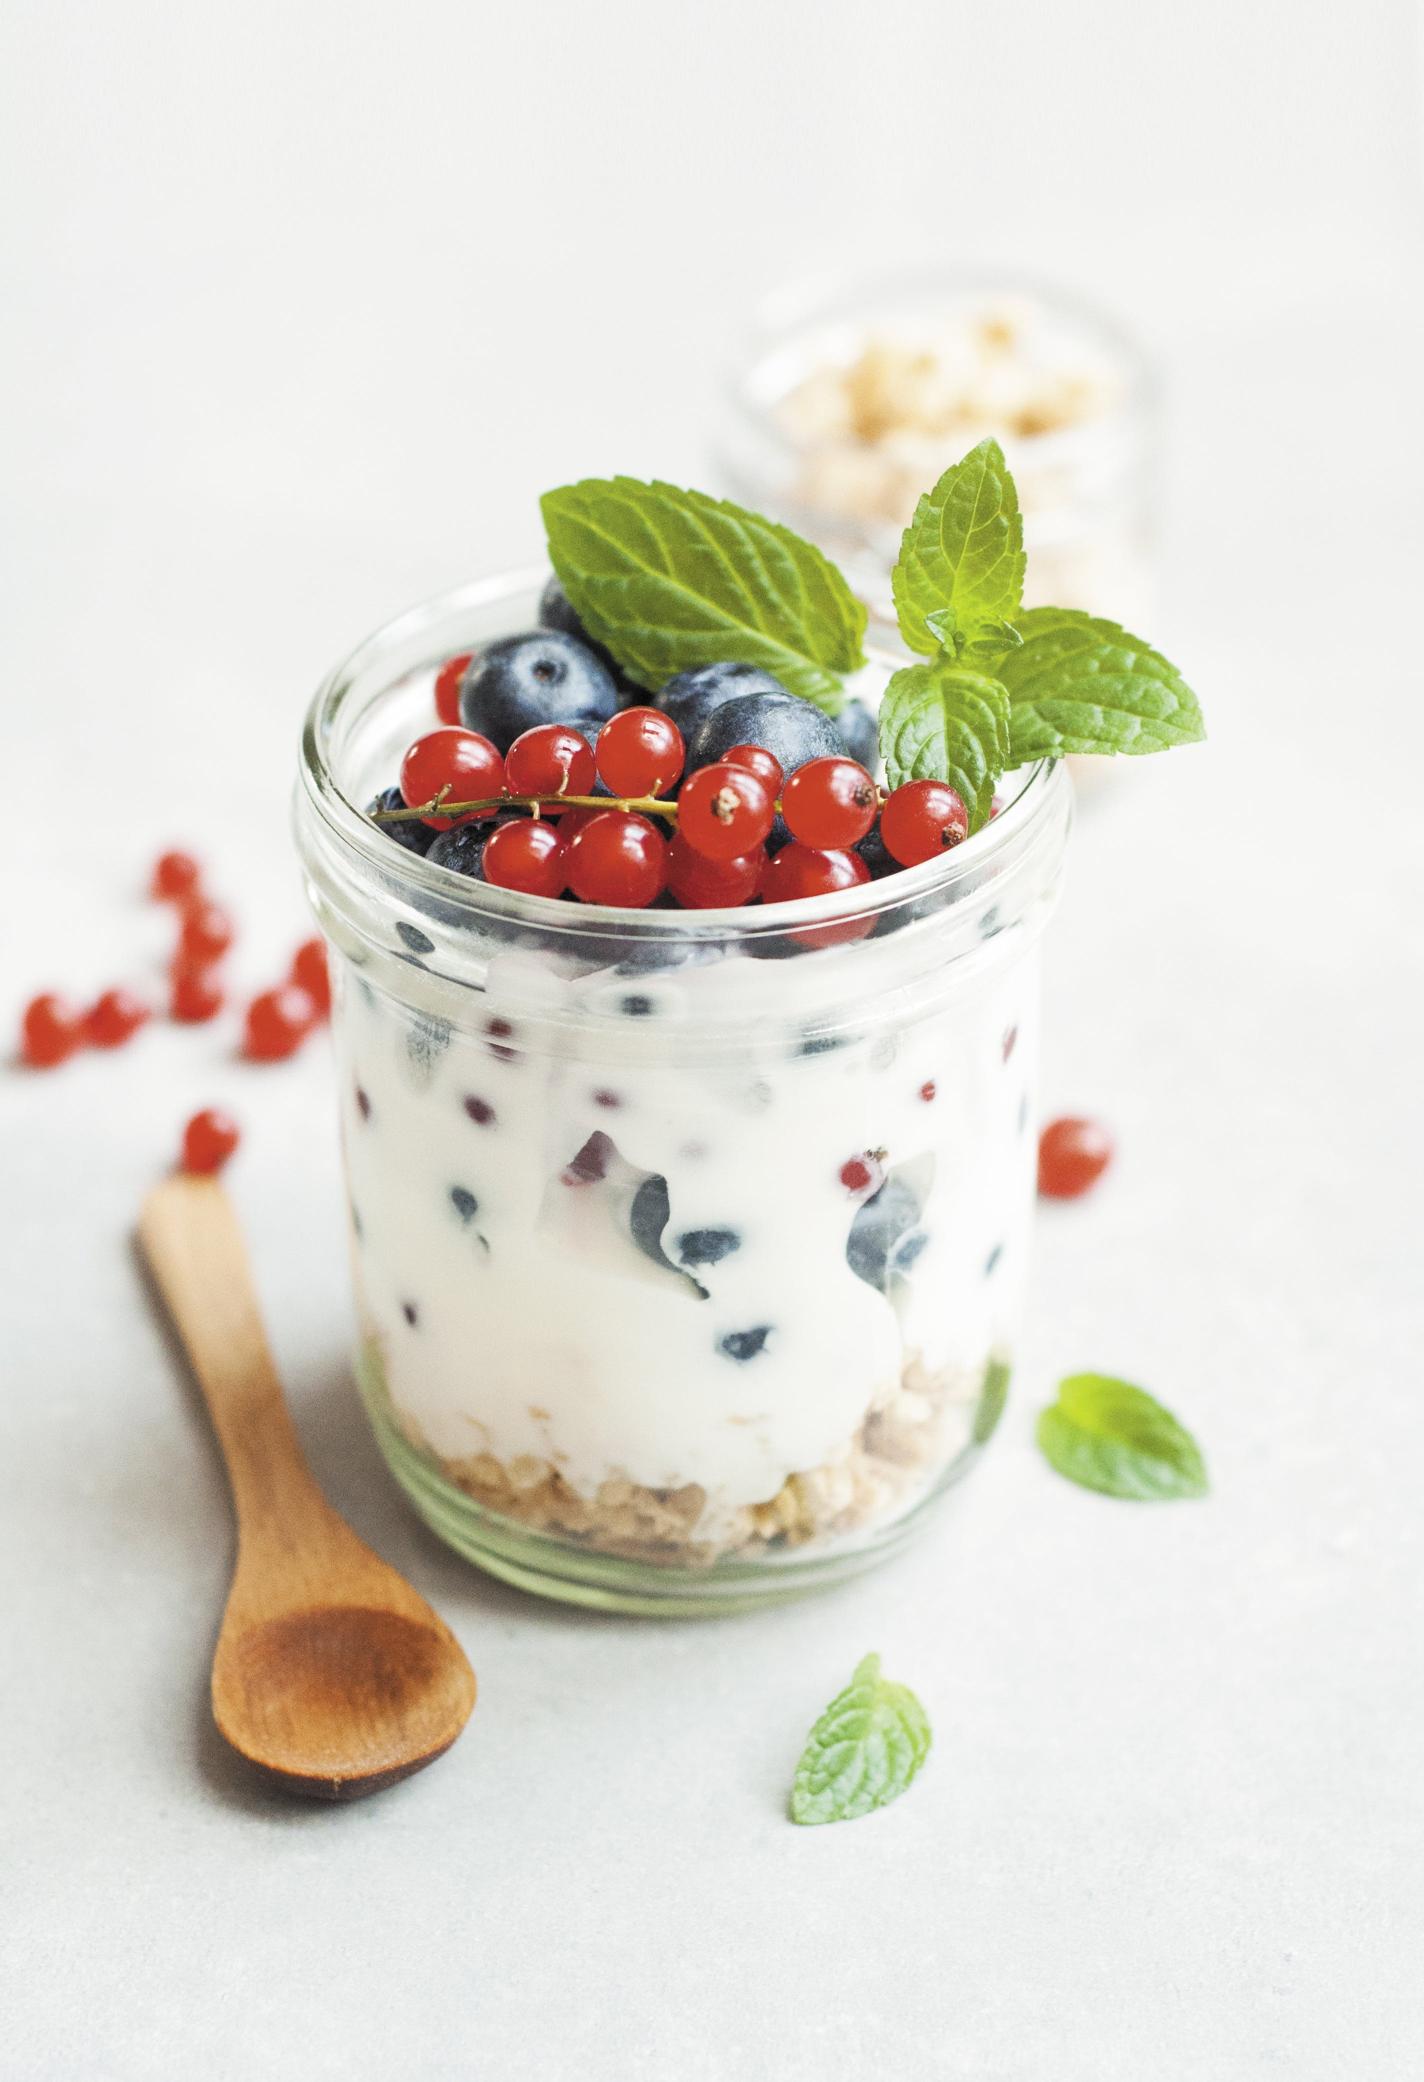 Benefici per la salute e impatto dietetico dello yogurt naturale, greco e setoso